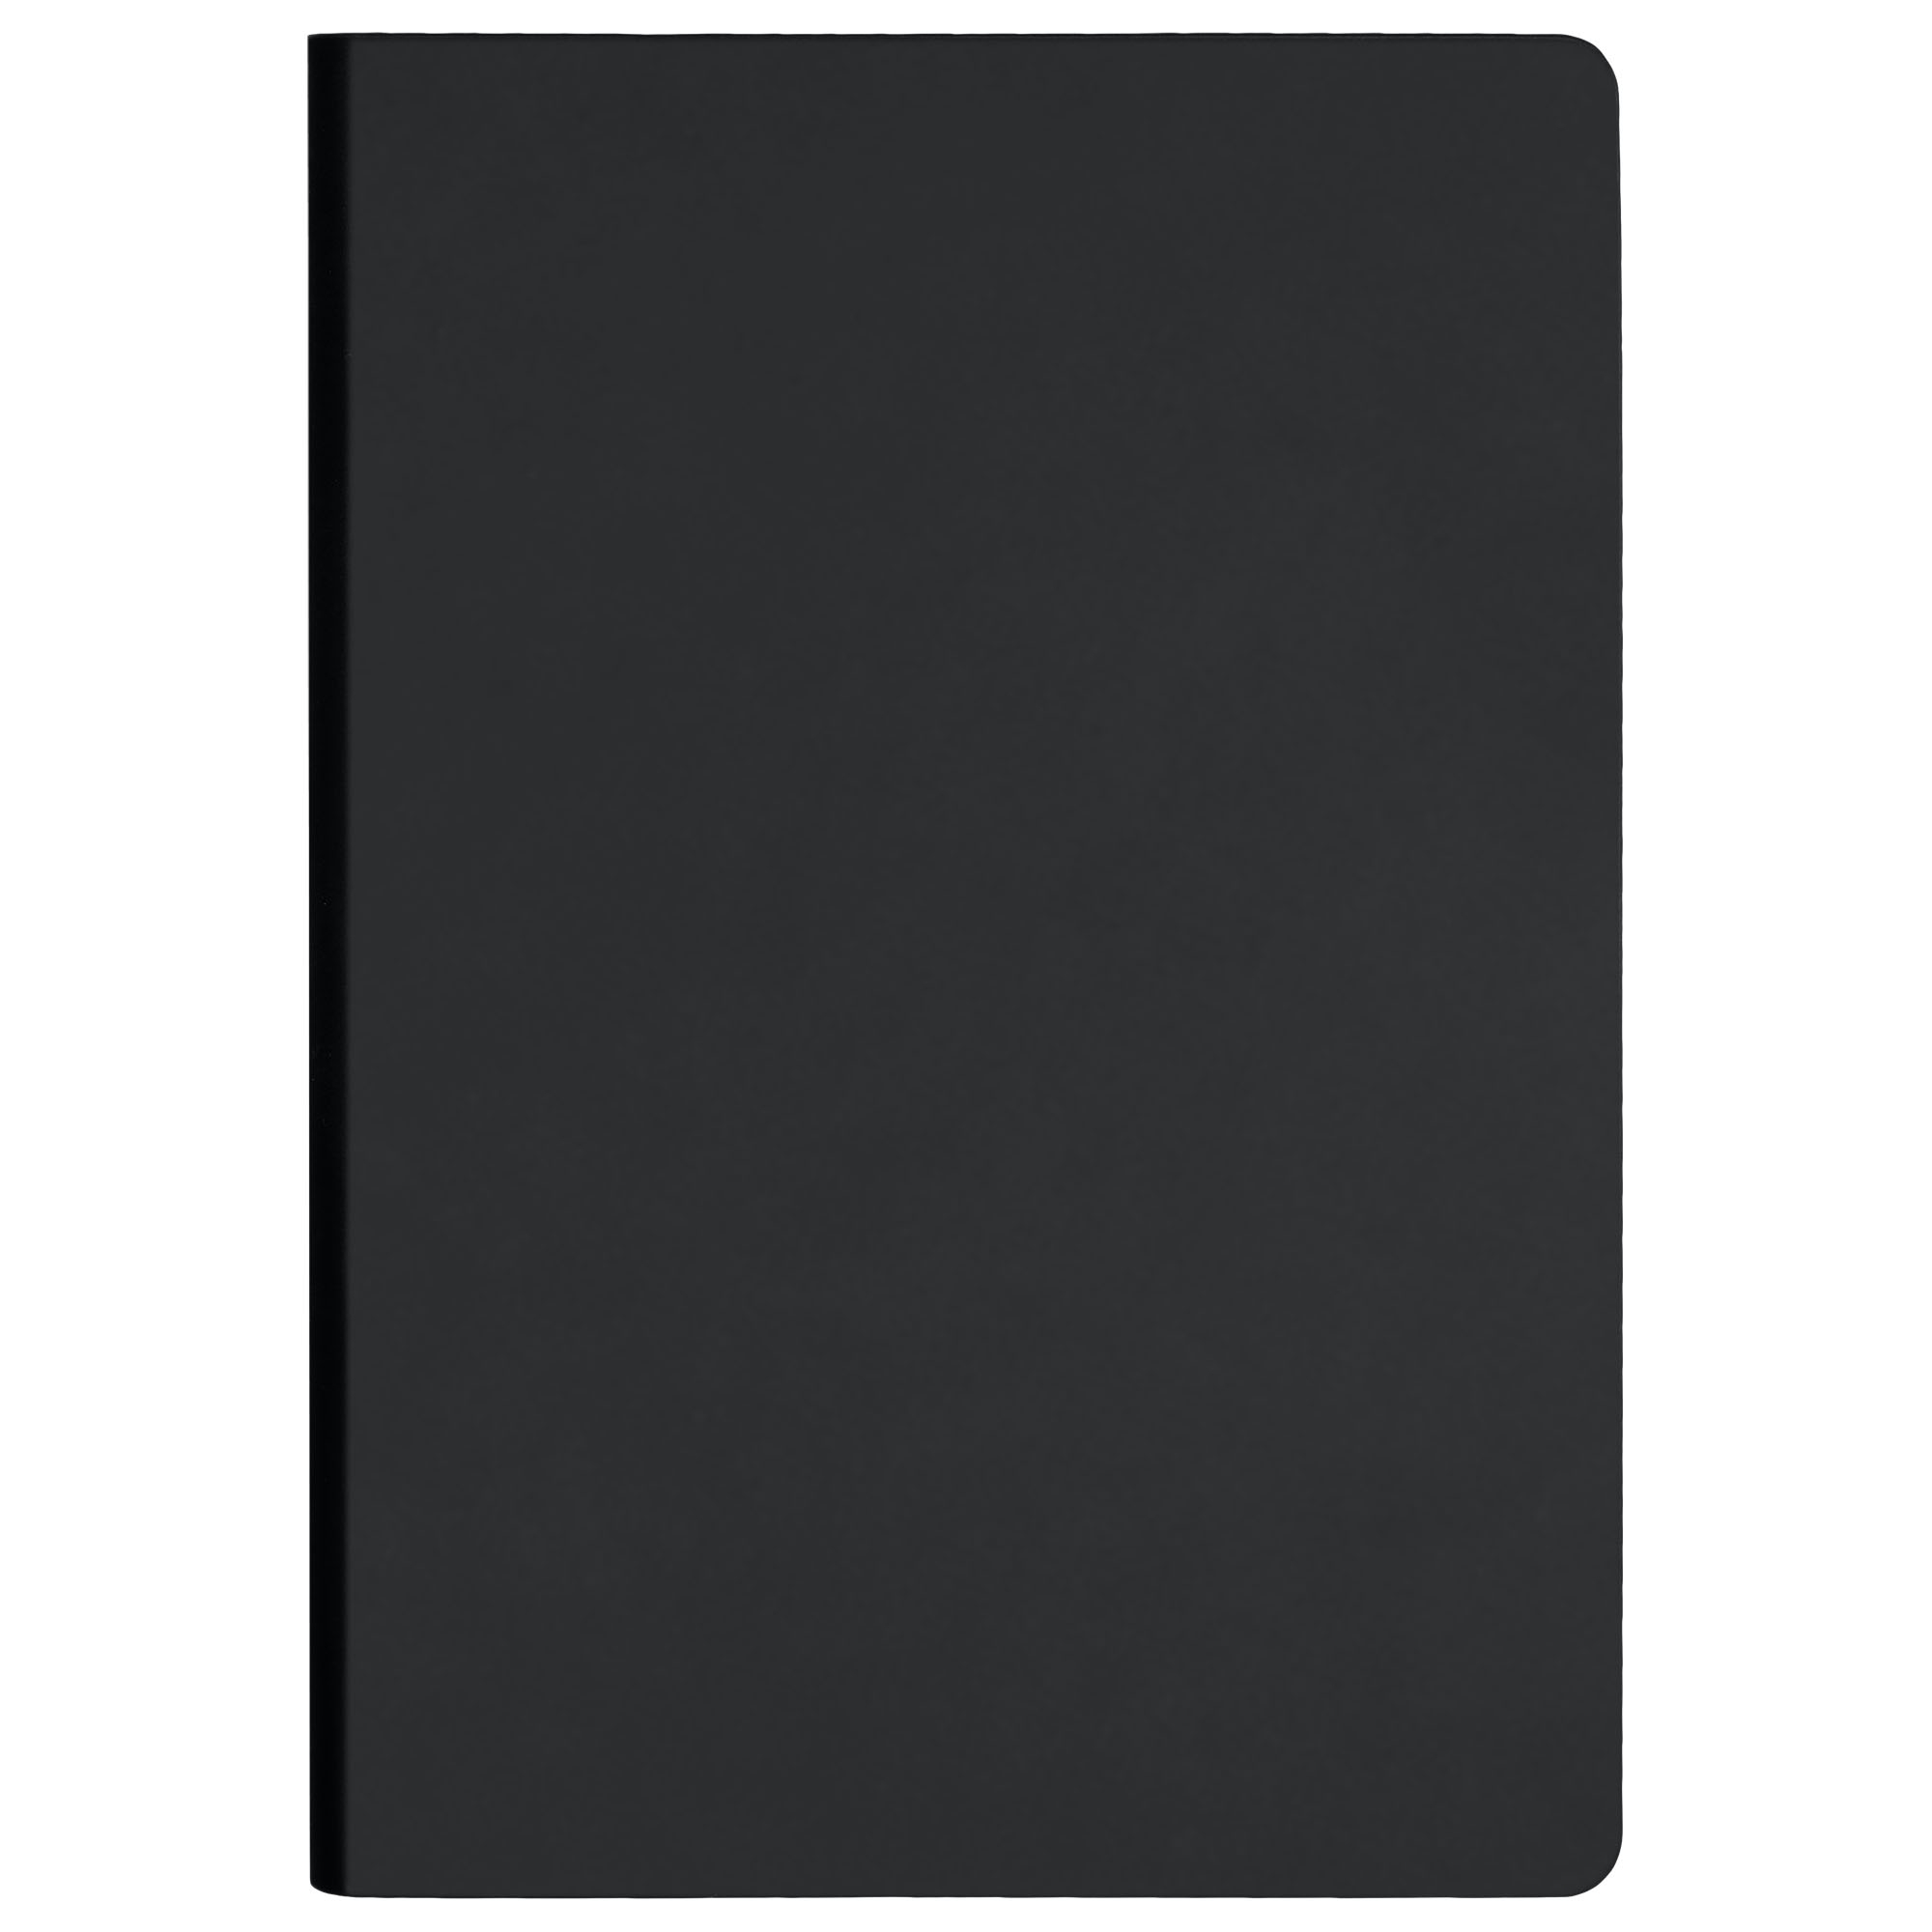 Ежедневник Spark недатированный, черный (без упаковки, без стикера), черный